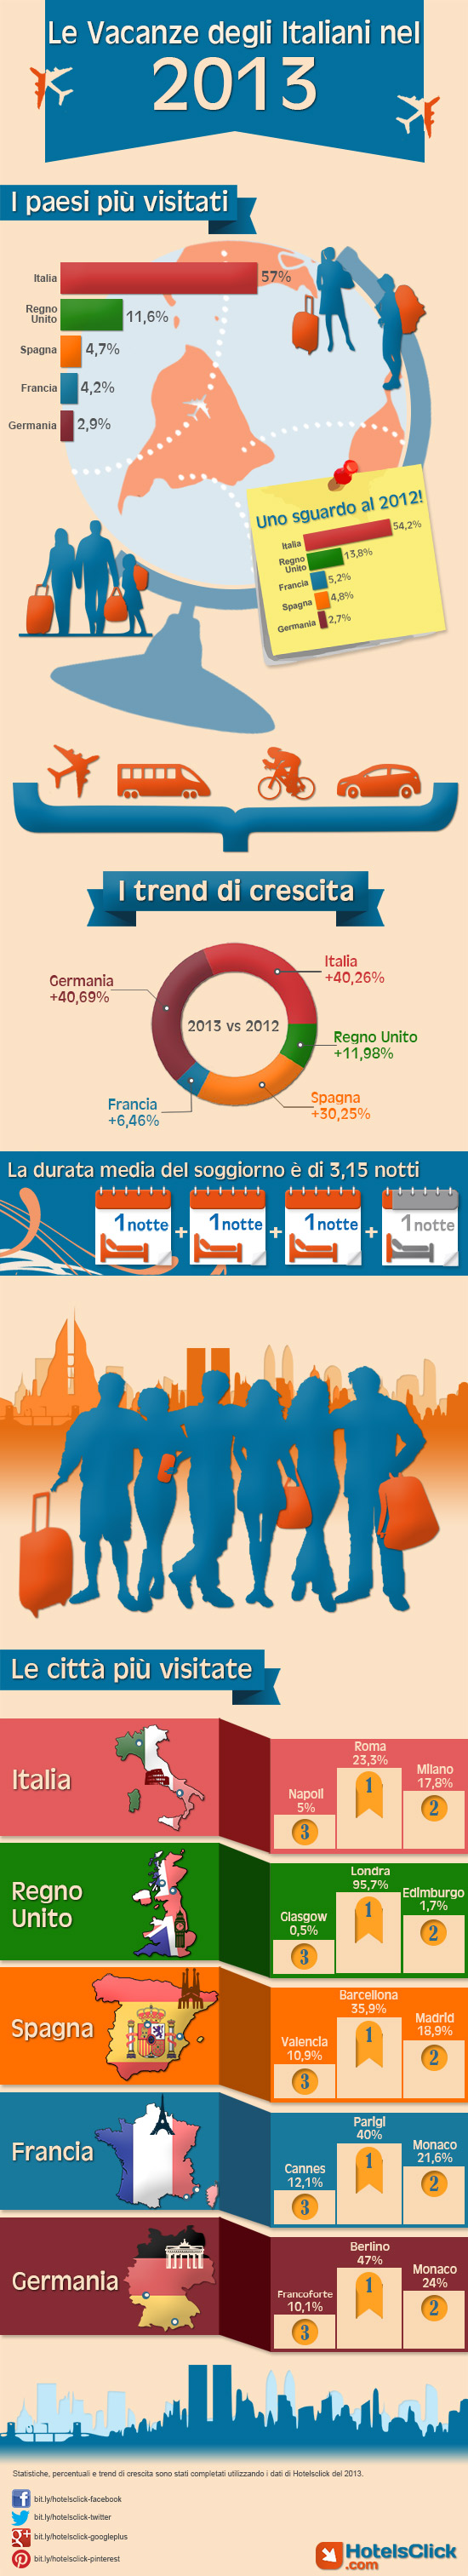 Le vacanze degli Italiani nel 2013: l'infografica di HotelsClick.com